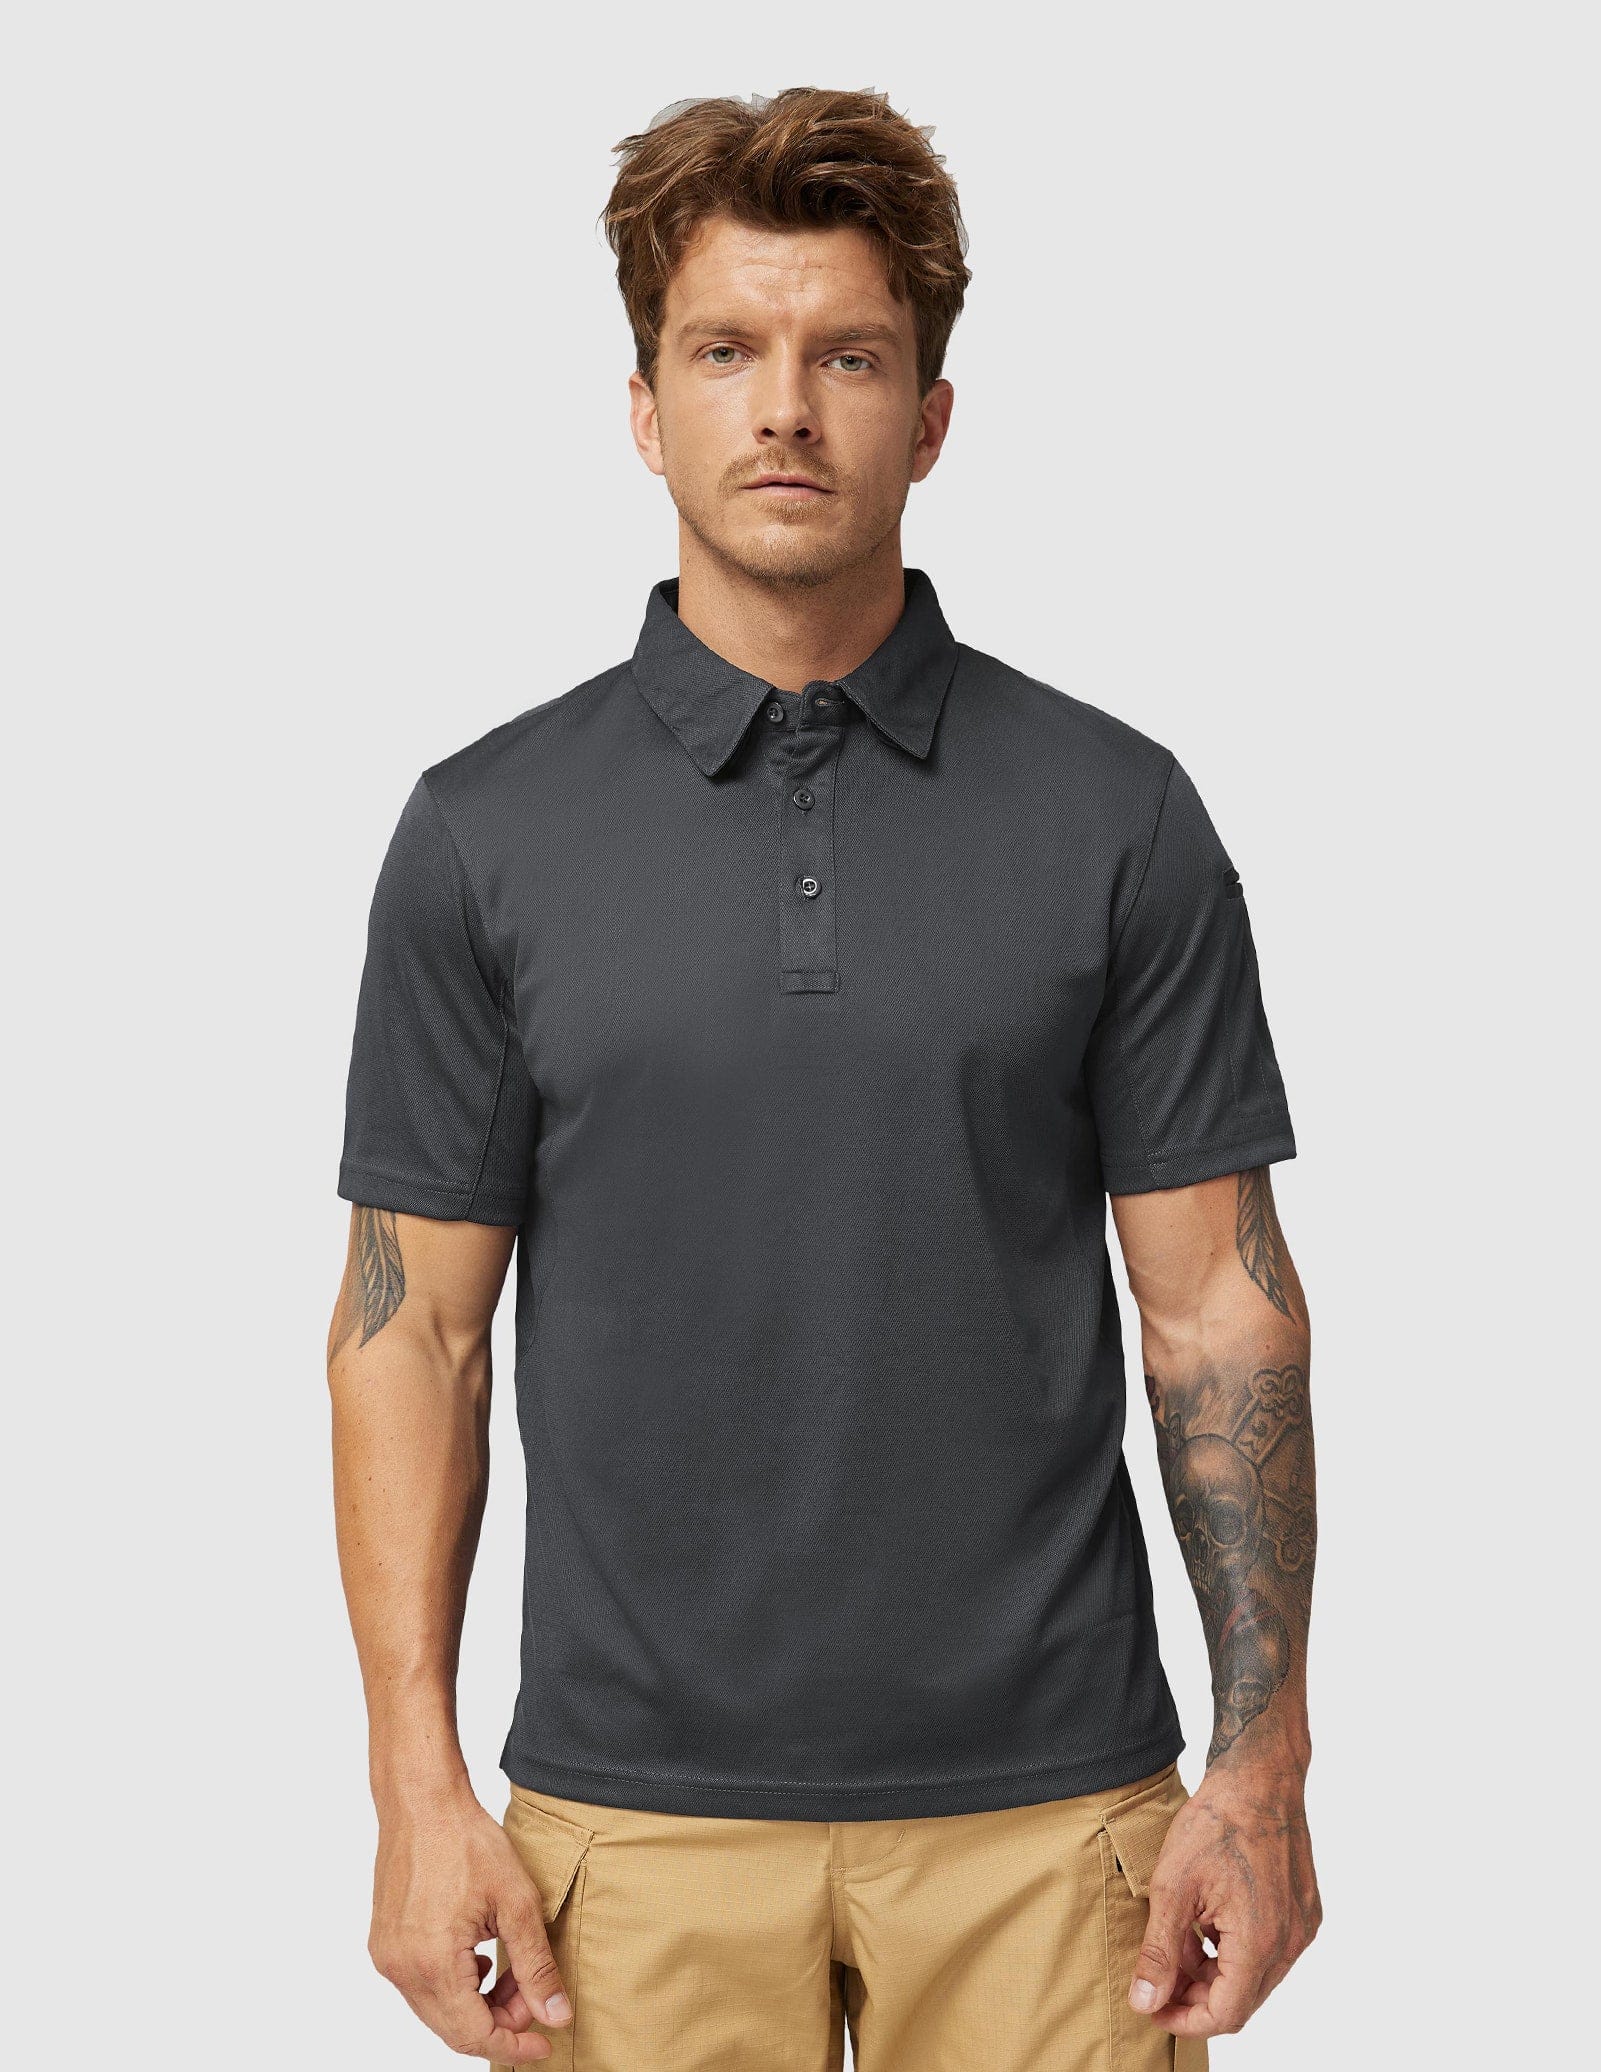 Men's Tactical Polo Shirts Outdoor Performance Collared Shirt Men Polo Grey / S MIER